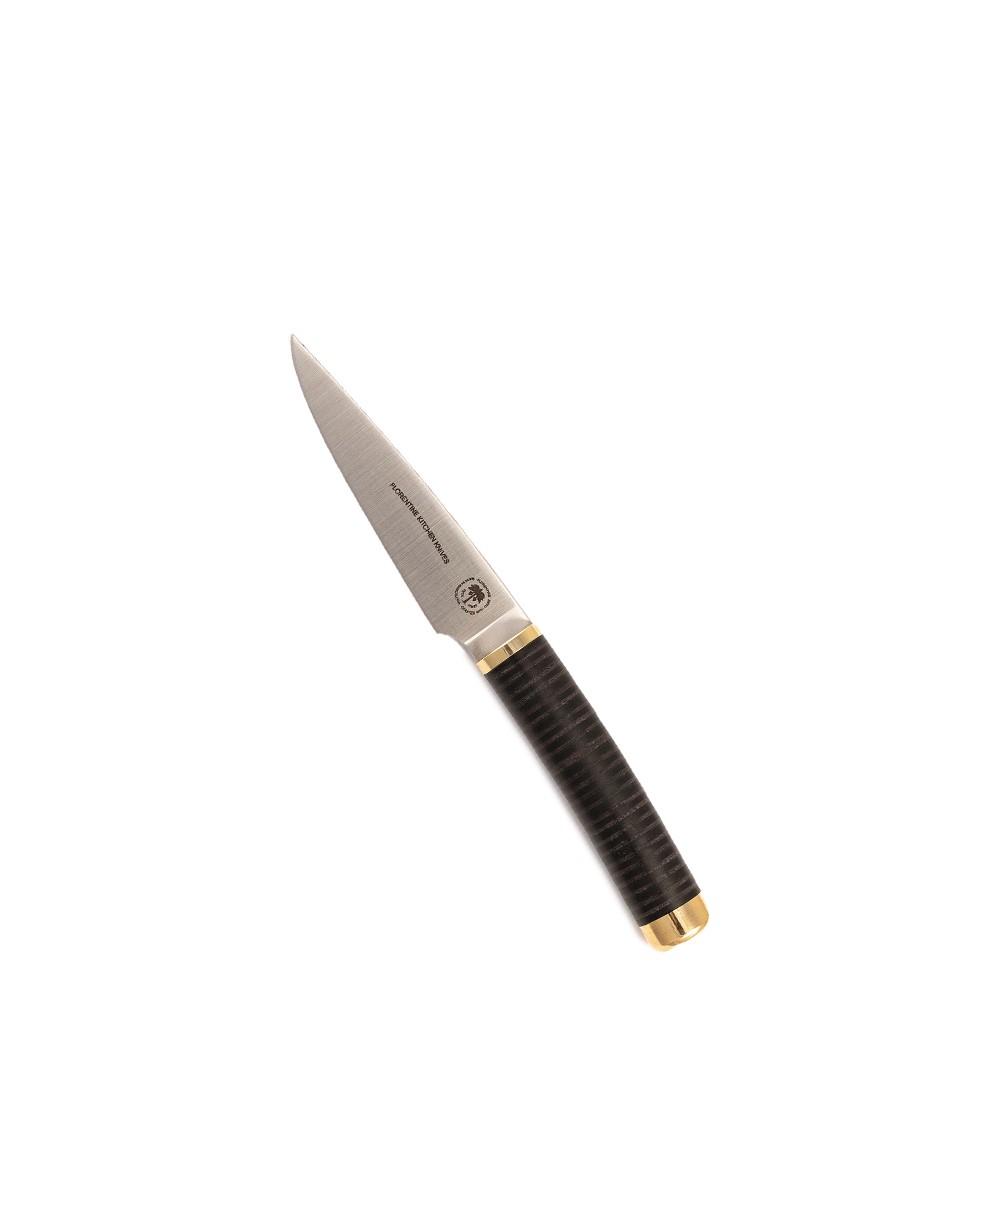 Produktbild des Florentine Paring Knife in black von Florentine Kitchen Knives im RAUM concept store 